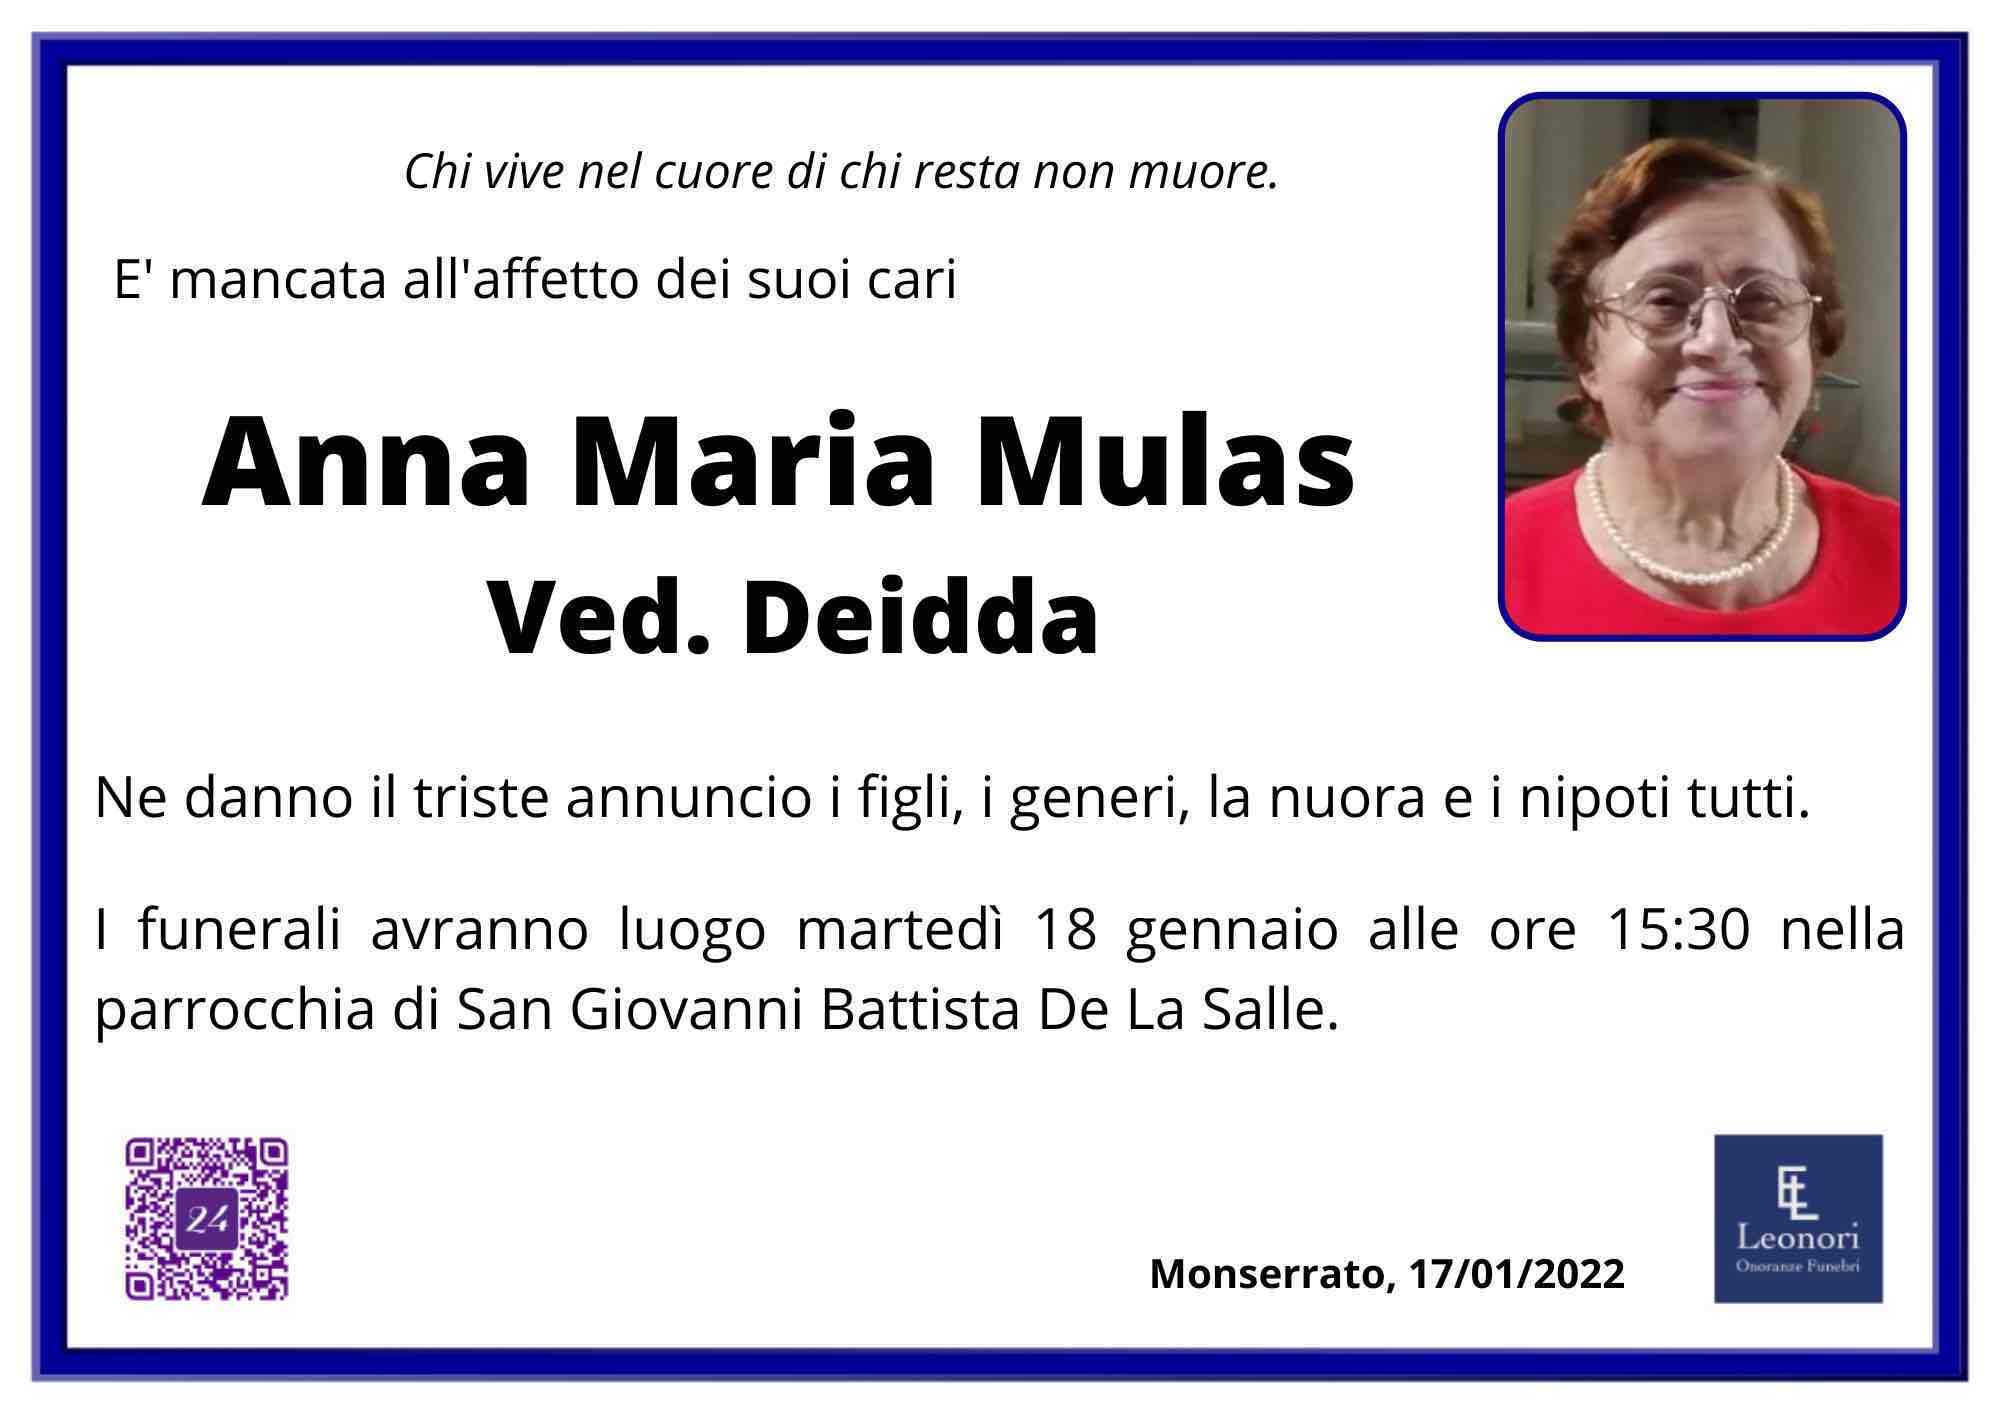 Anna Maria Mulas